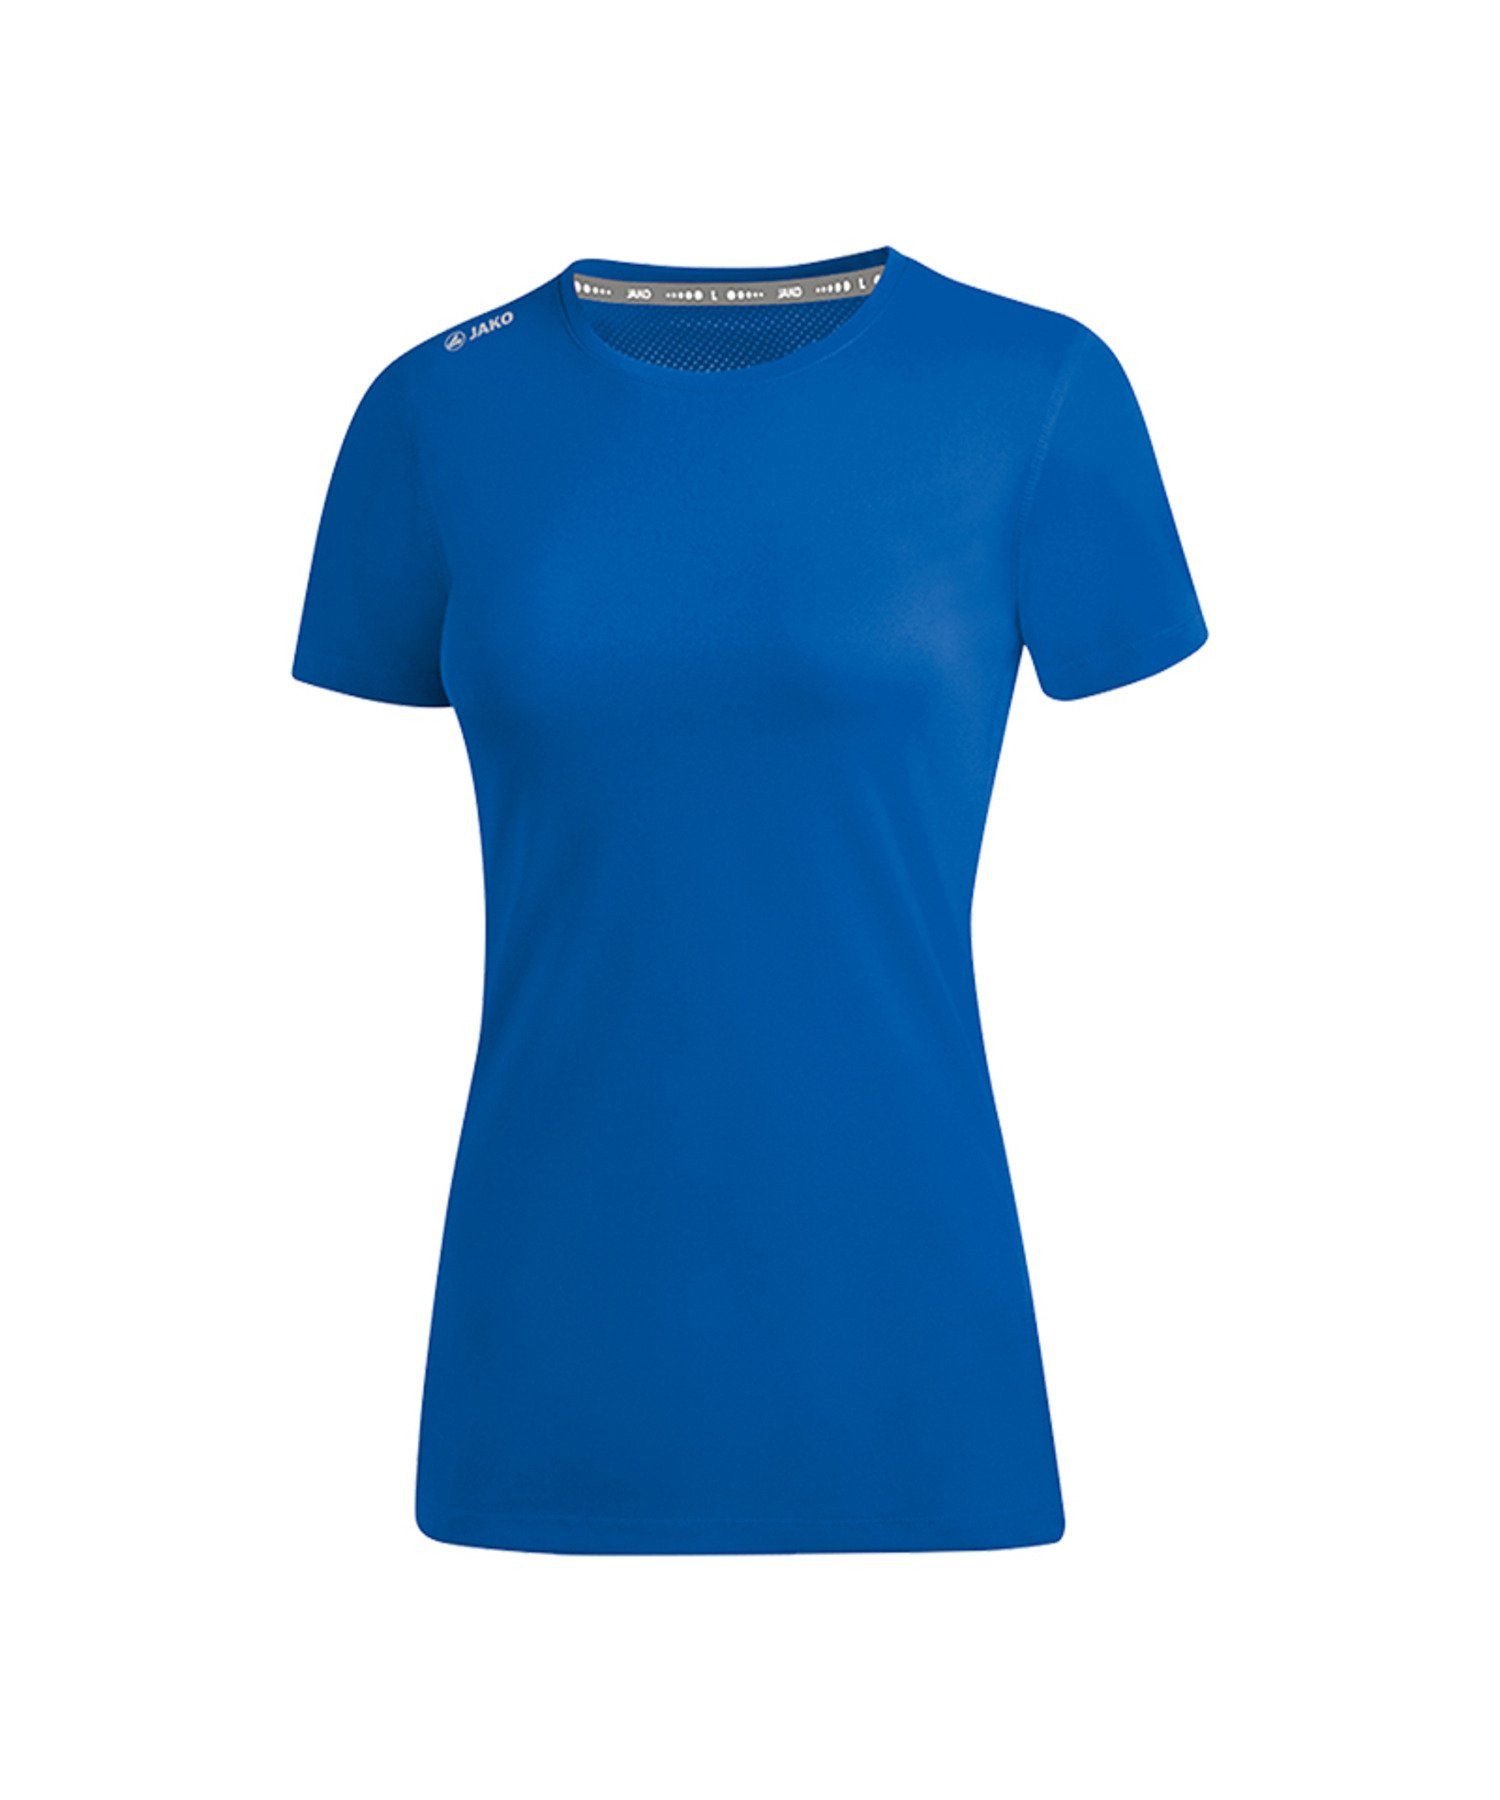 Jako 2.0 Running Blau default T-Shirt Run Laufshirt Damen